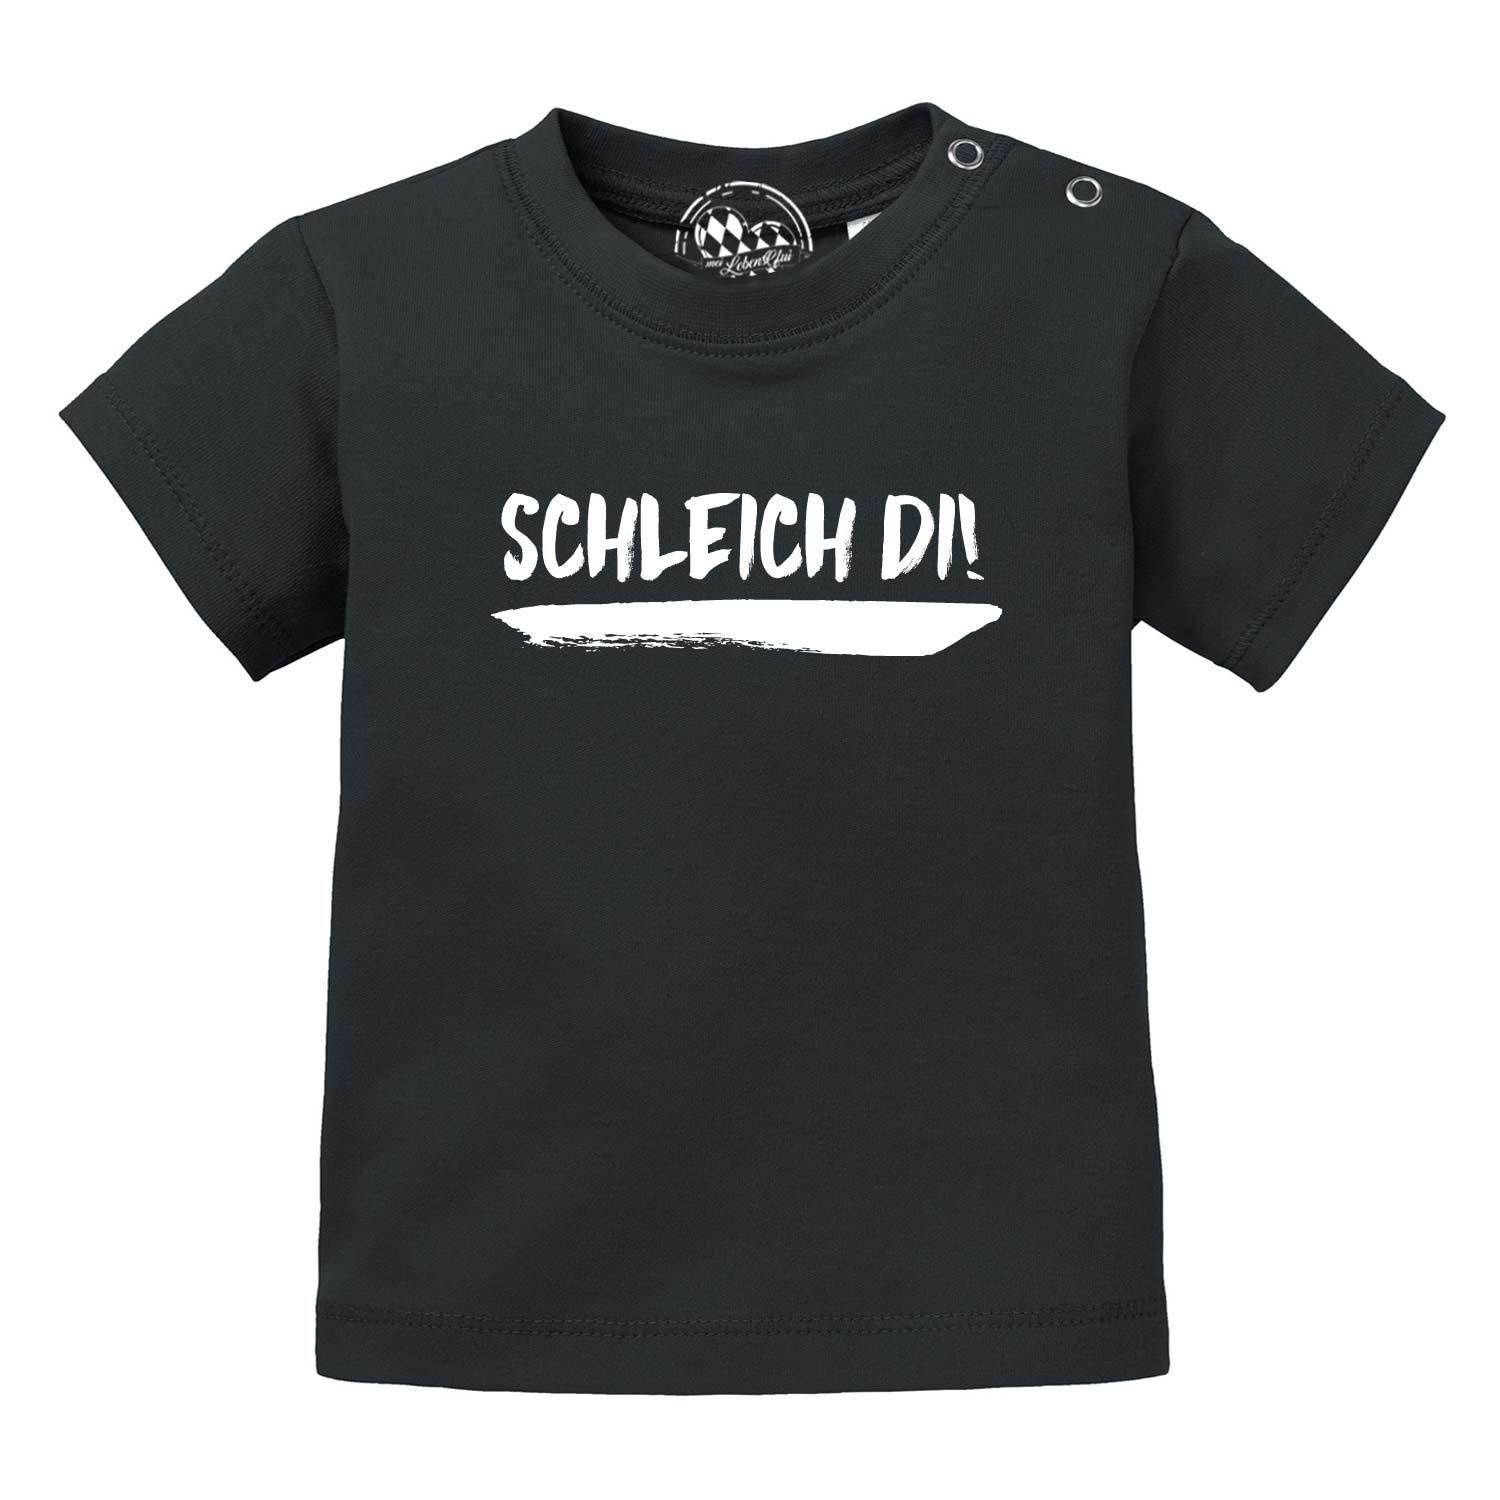 Baby T-Shirt "Schleich di!" - bavariashop - mei LebensGfui